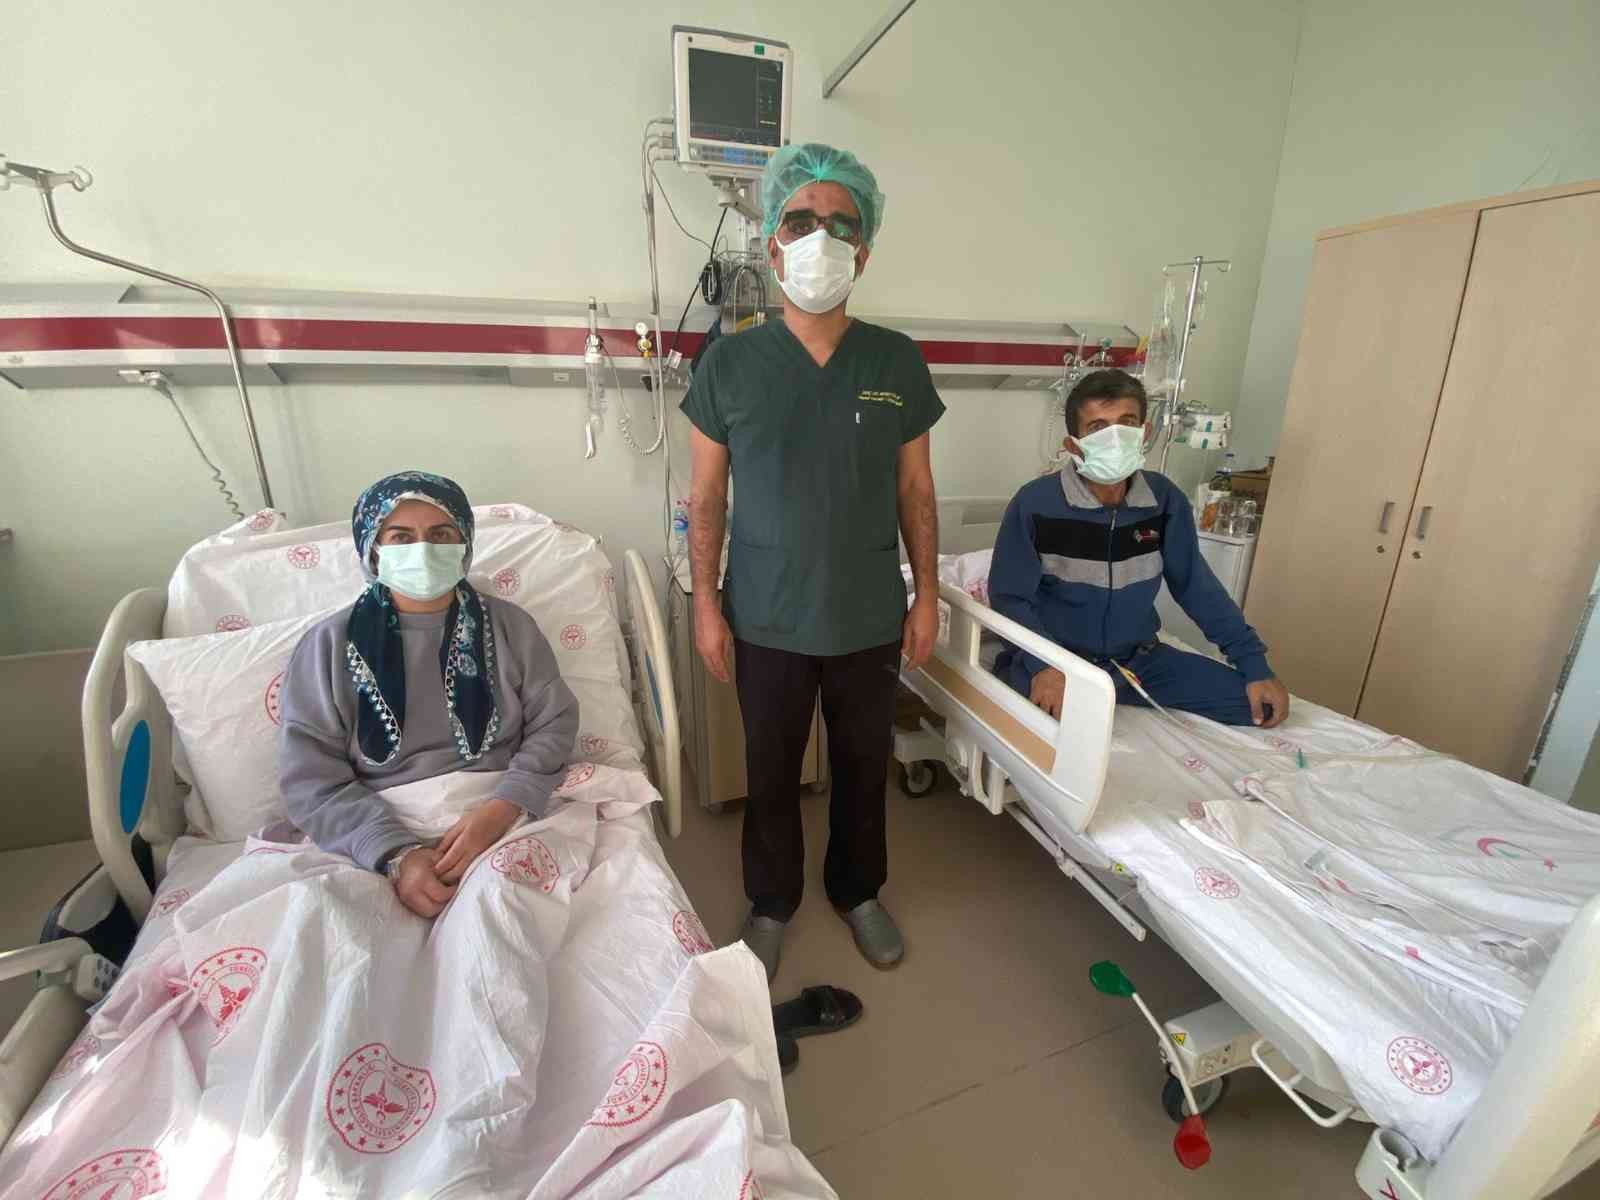 Türkiye’de bir ilk, organları ters yerde olan hastadan böbrek nakli yapıldı #diyarbakir